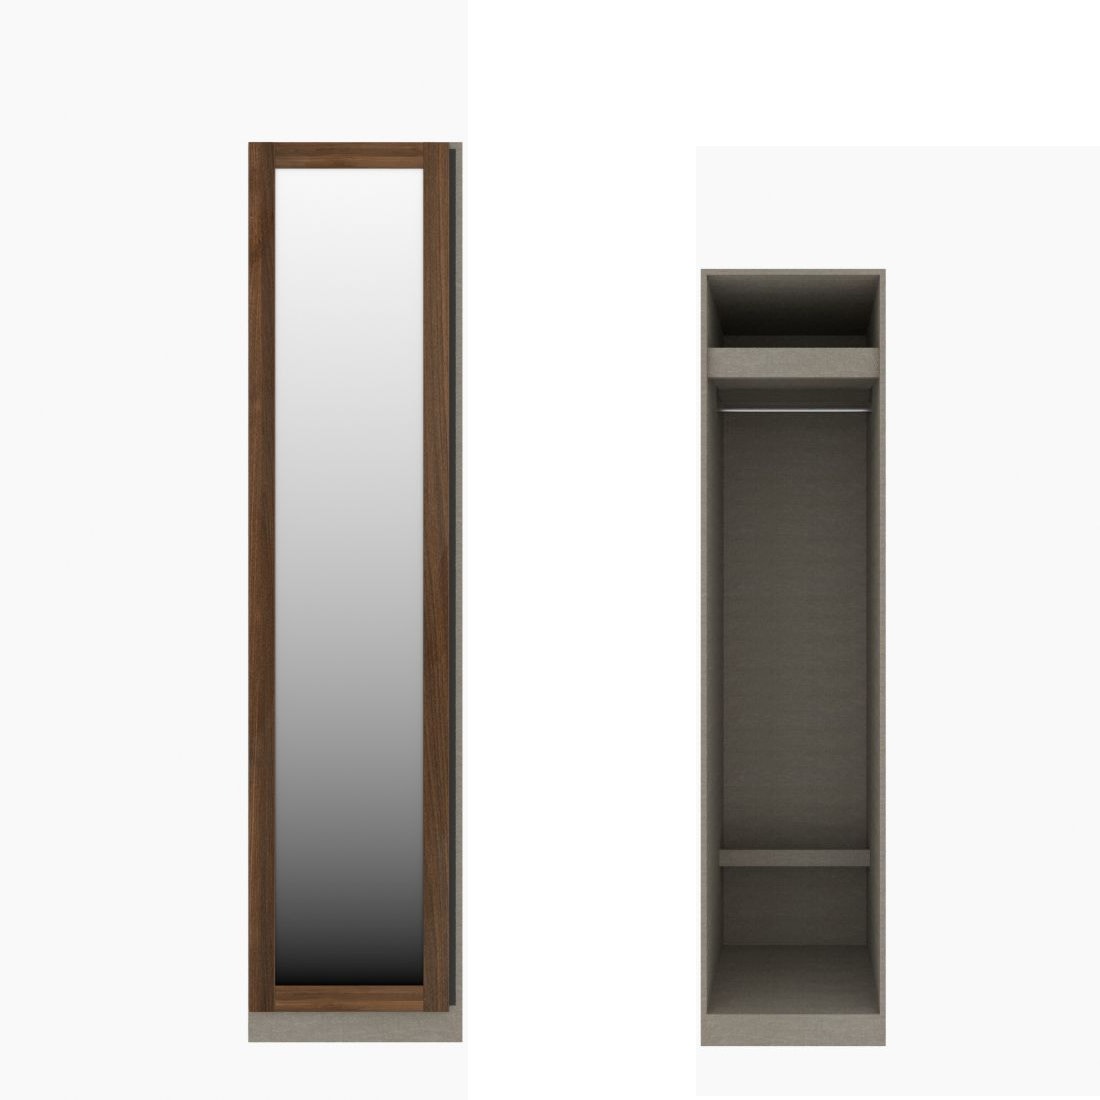 ตู้เสื้อผ้า ราวแขวนโล่ง OP-J (หน้าบานเปิดซ้าย) ขนาด 50 ซม. รุ่น Blox สีไม้เข้ม&กระจกเงา01